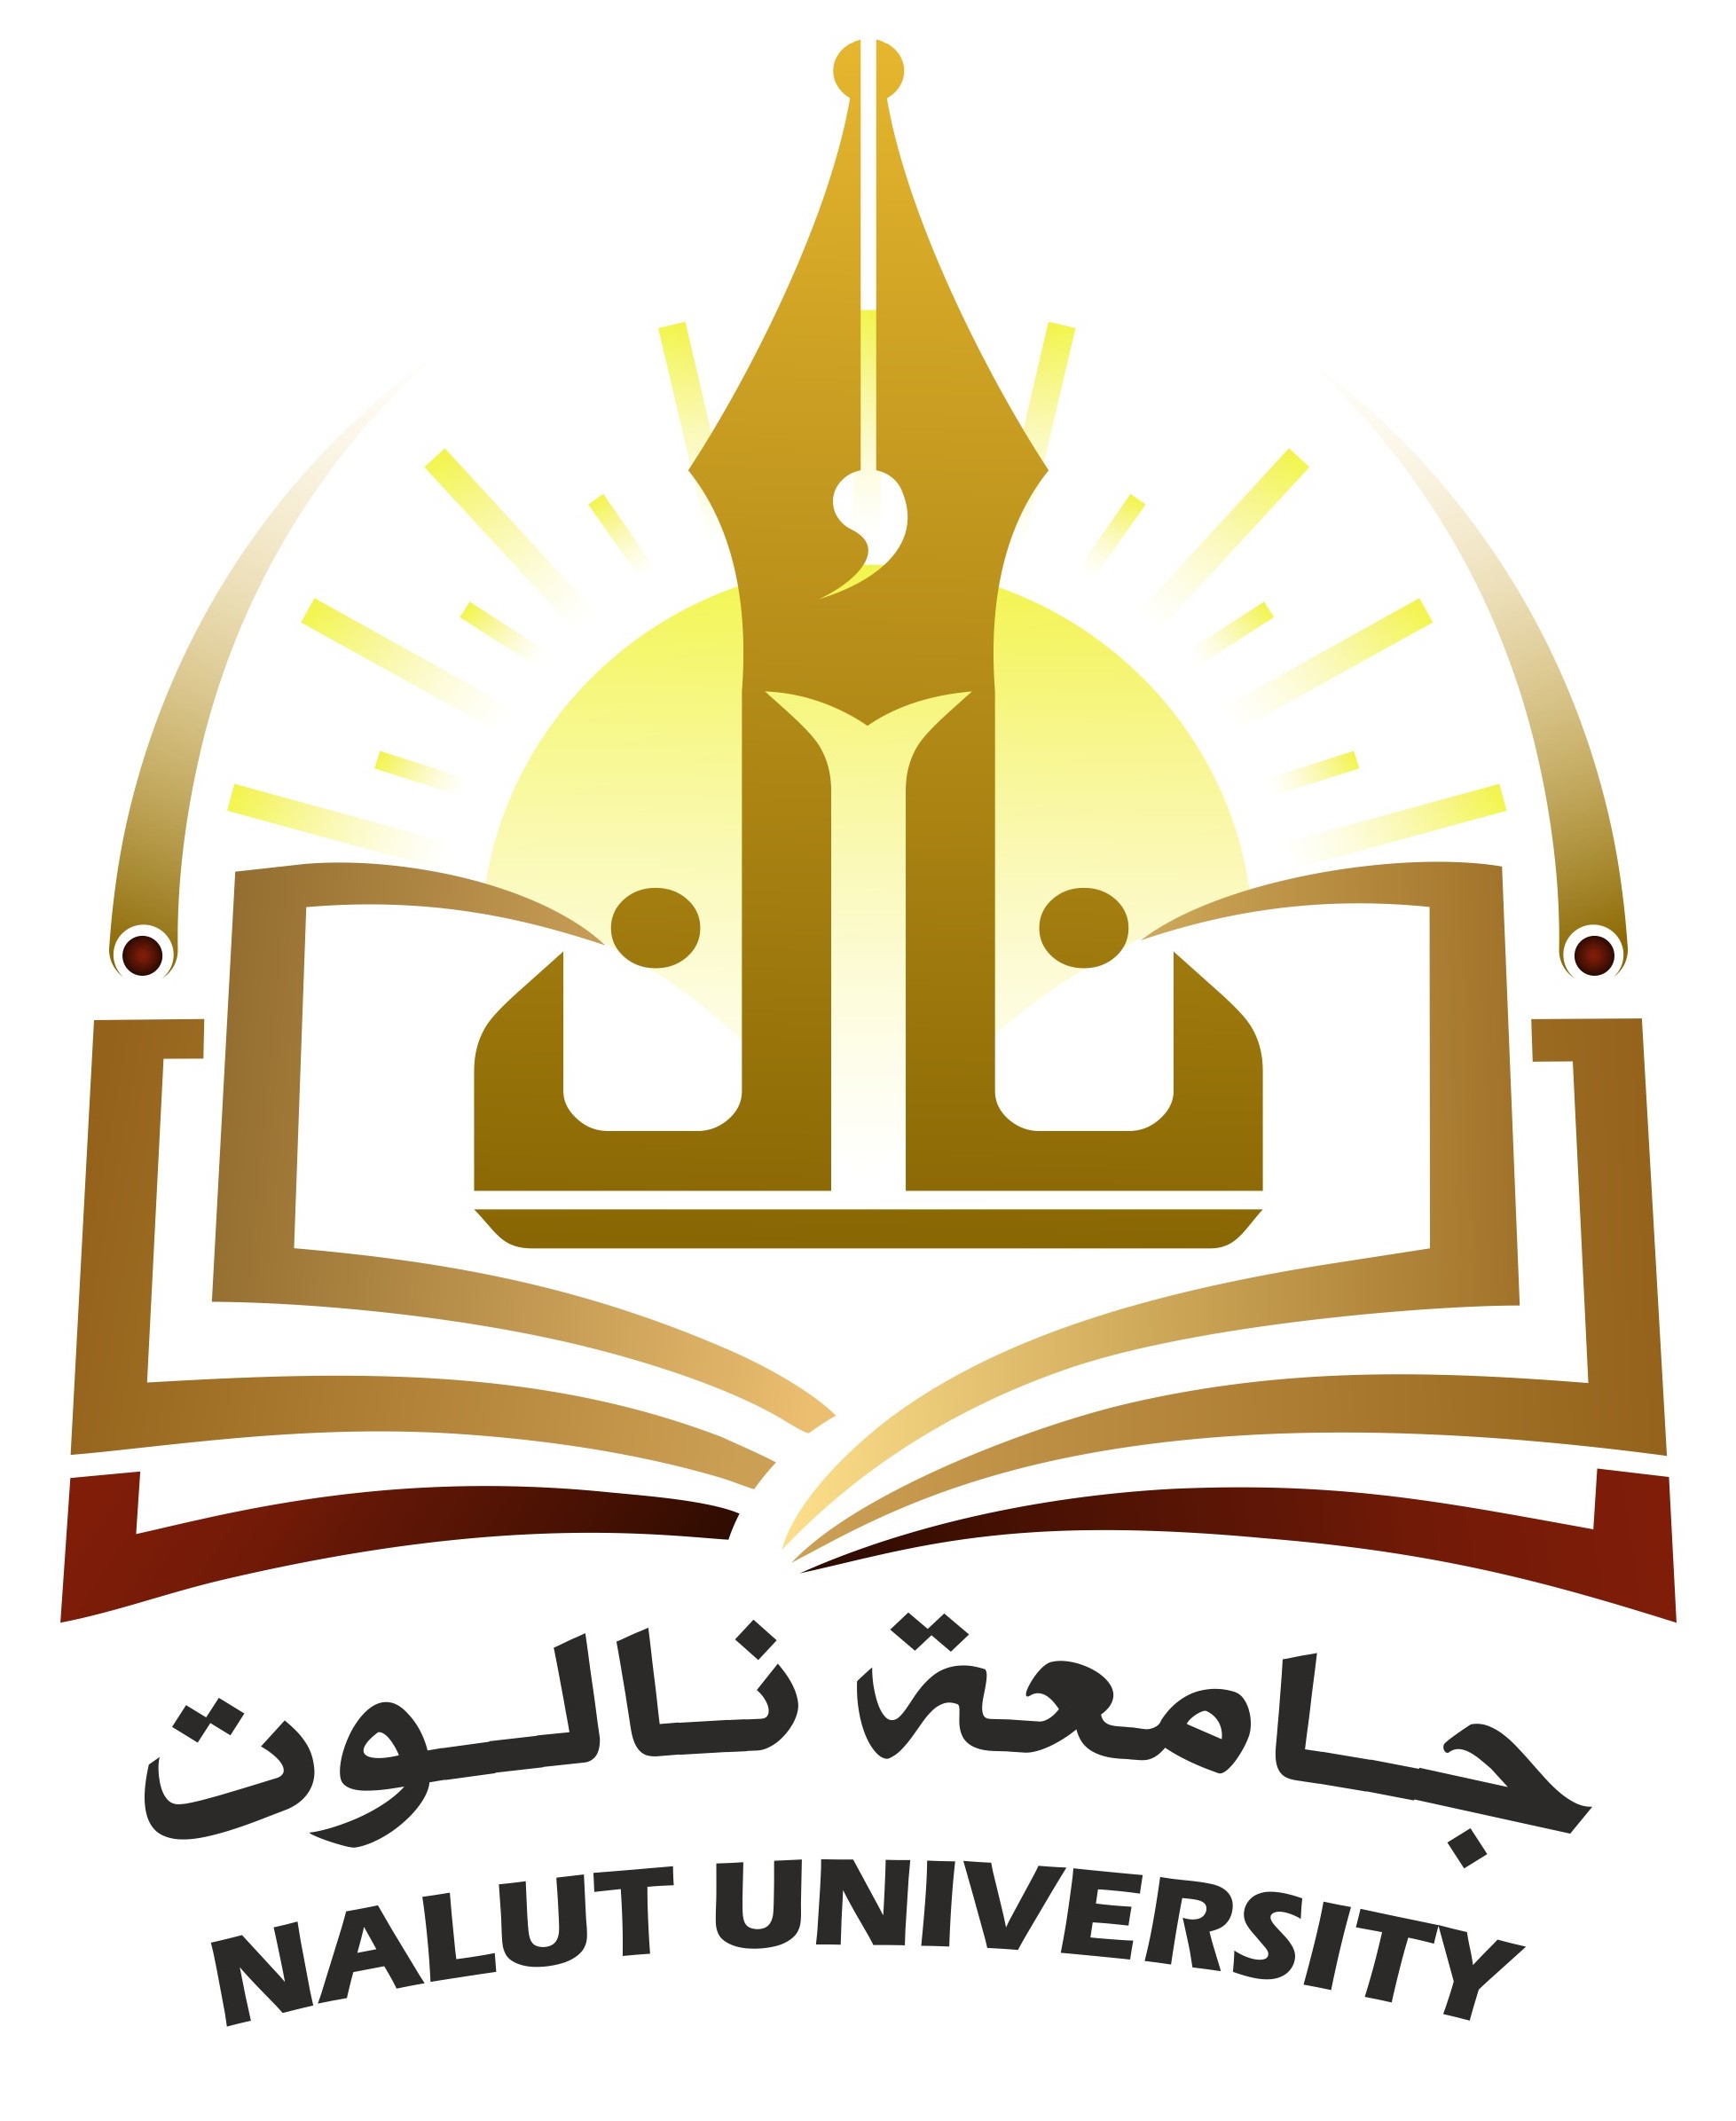 Nalut University